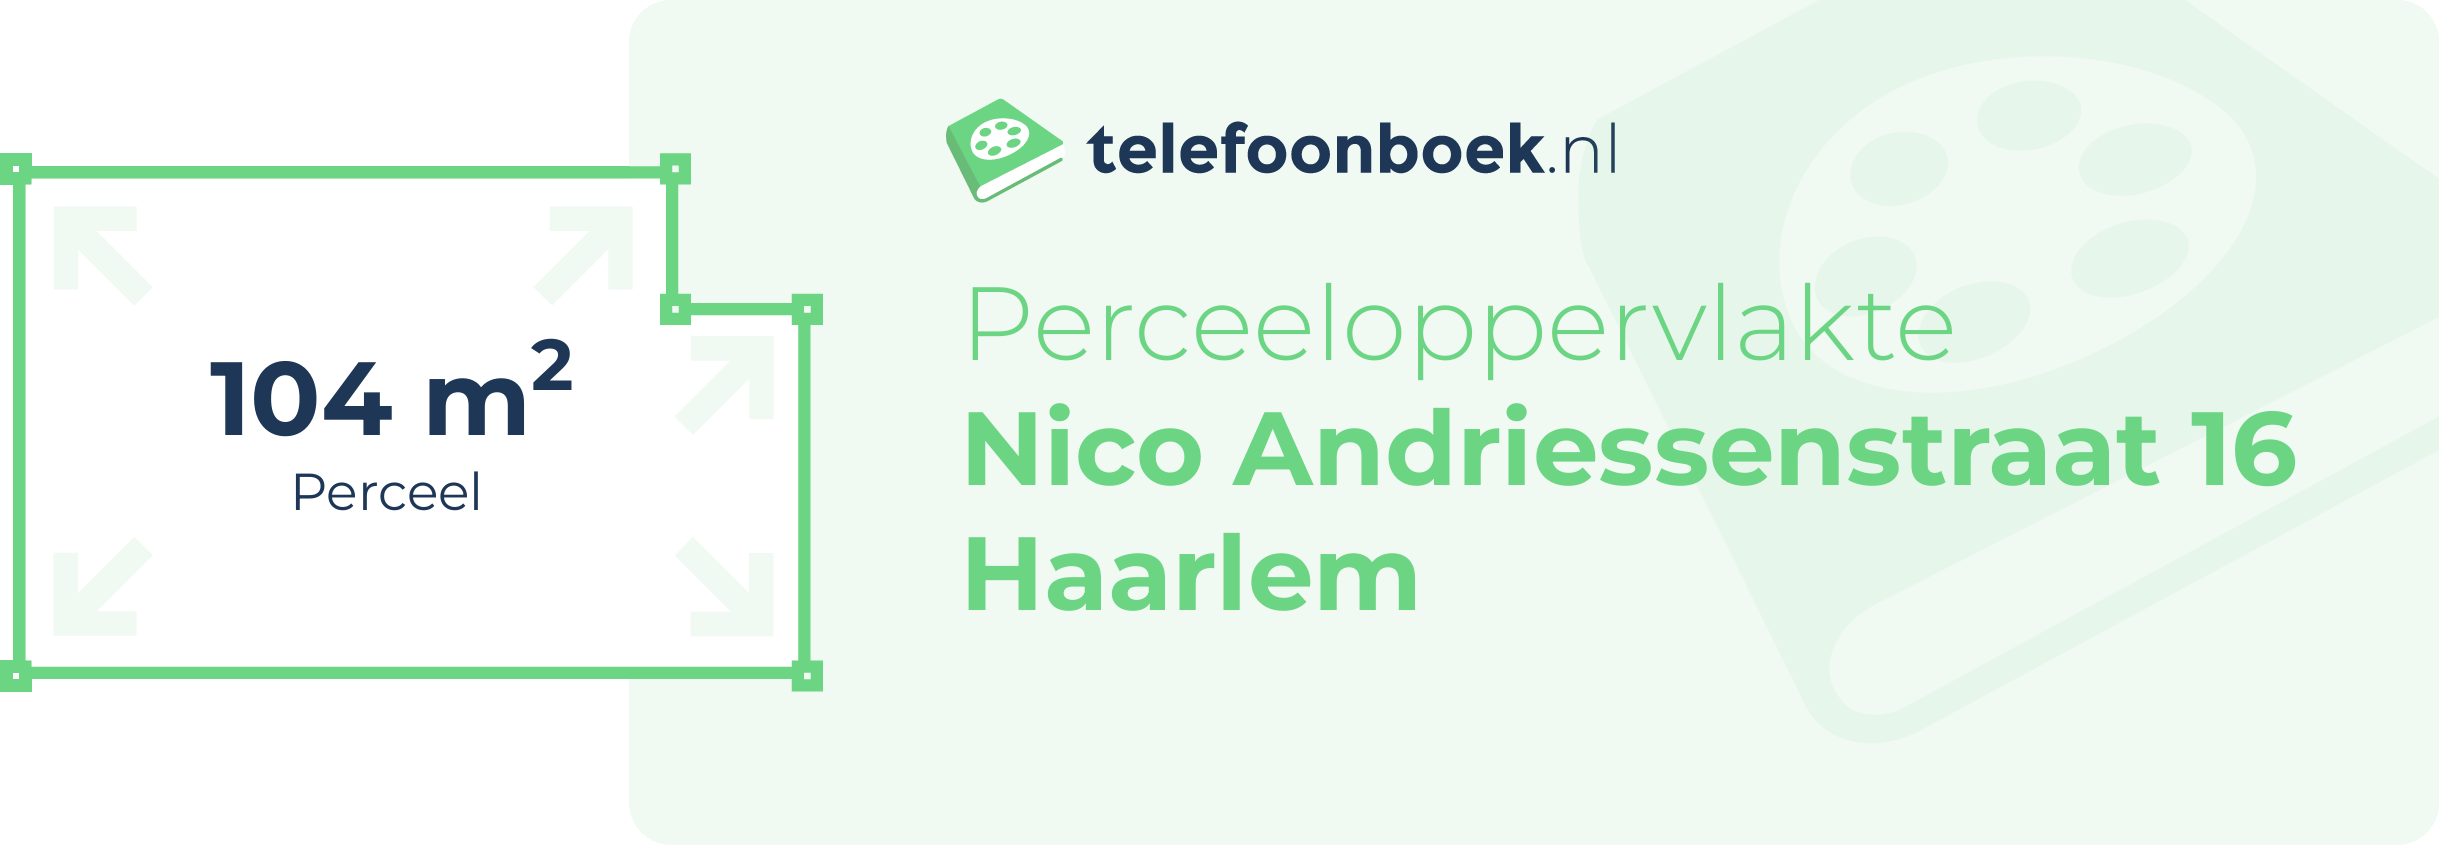 Perceeloppervlakte Nico Andriessenstraat 16 Haarlem